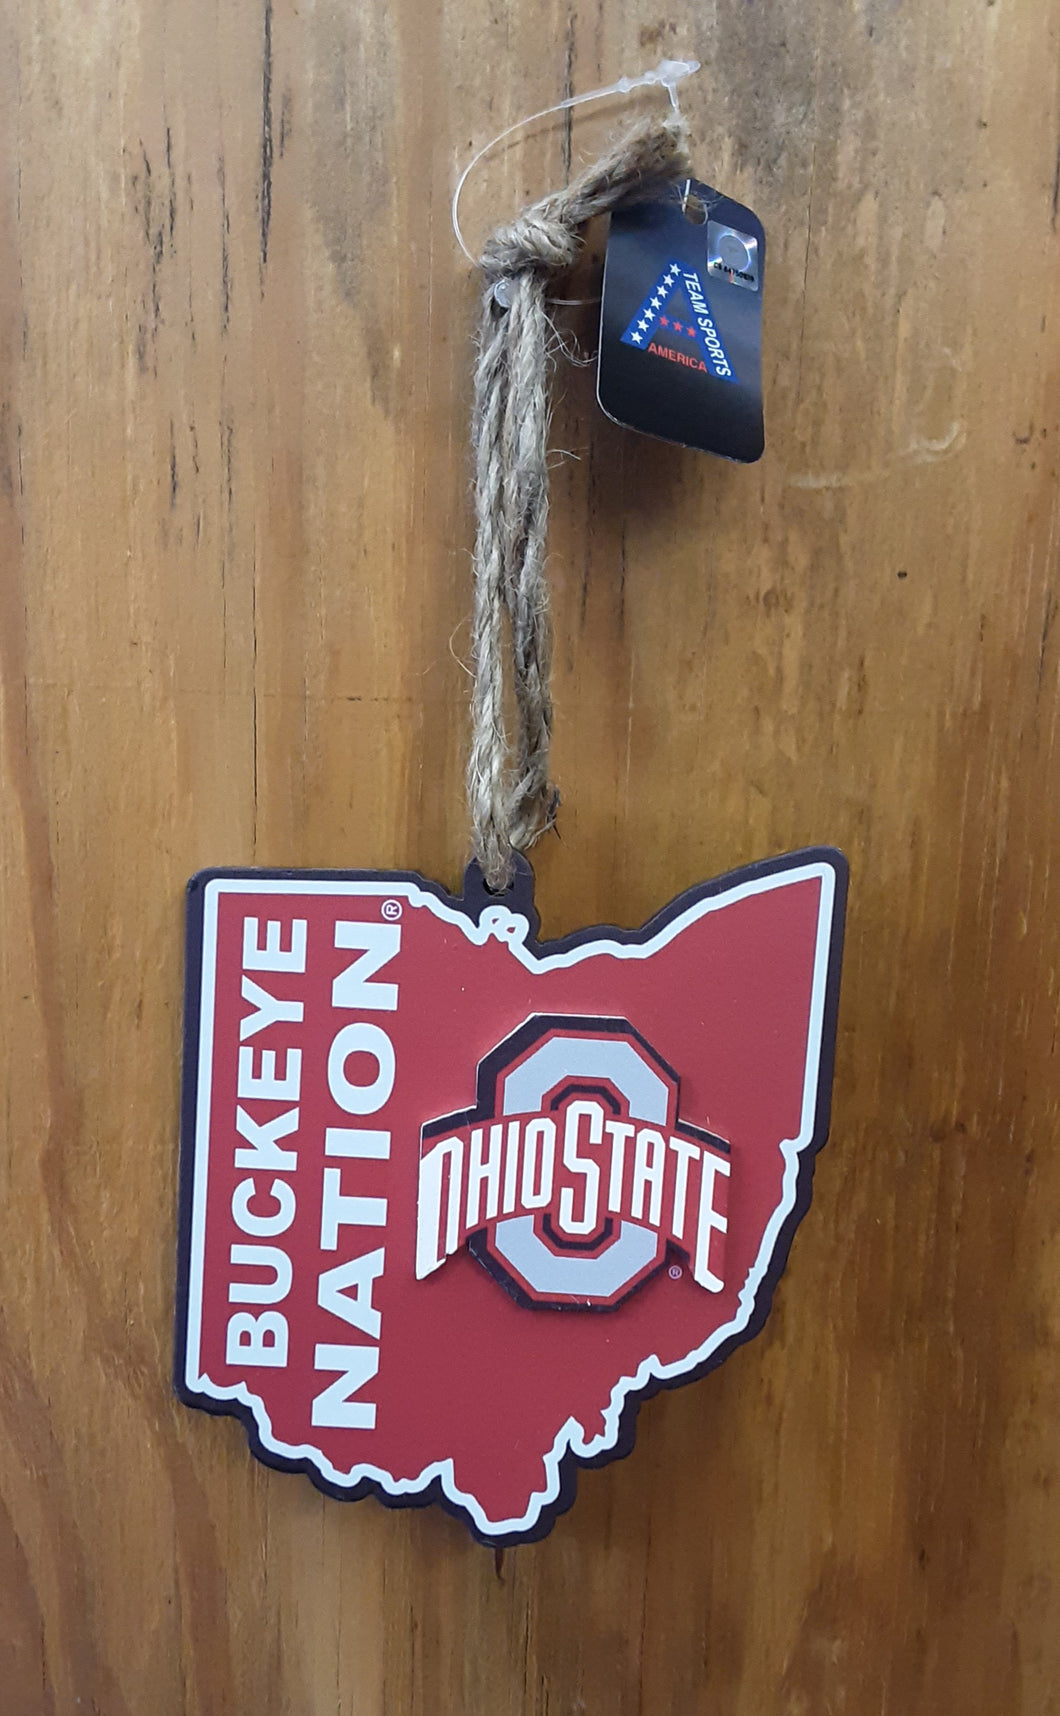 Ohio State Ornament